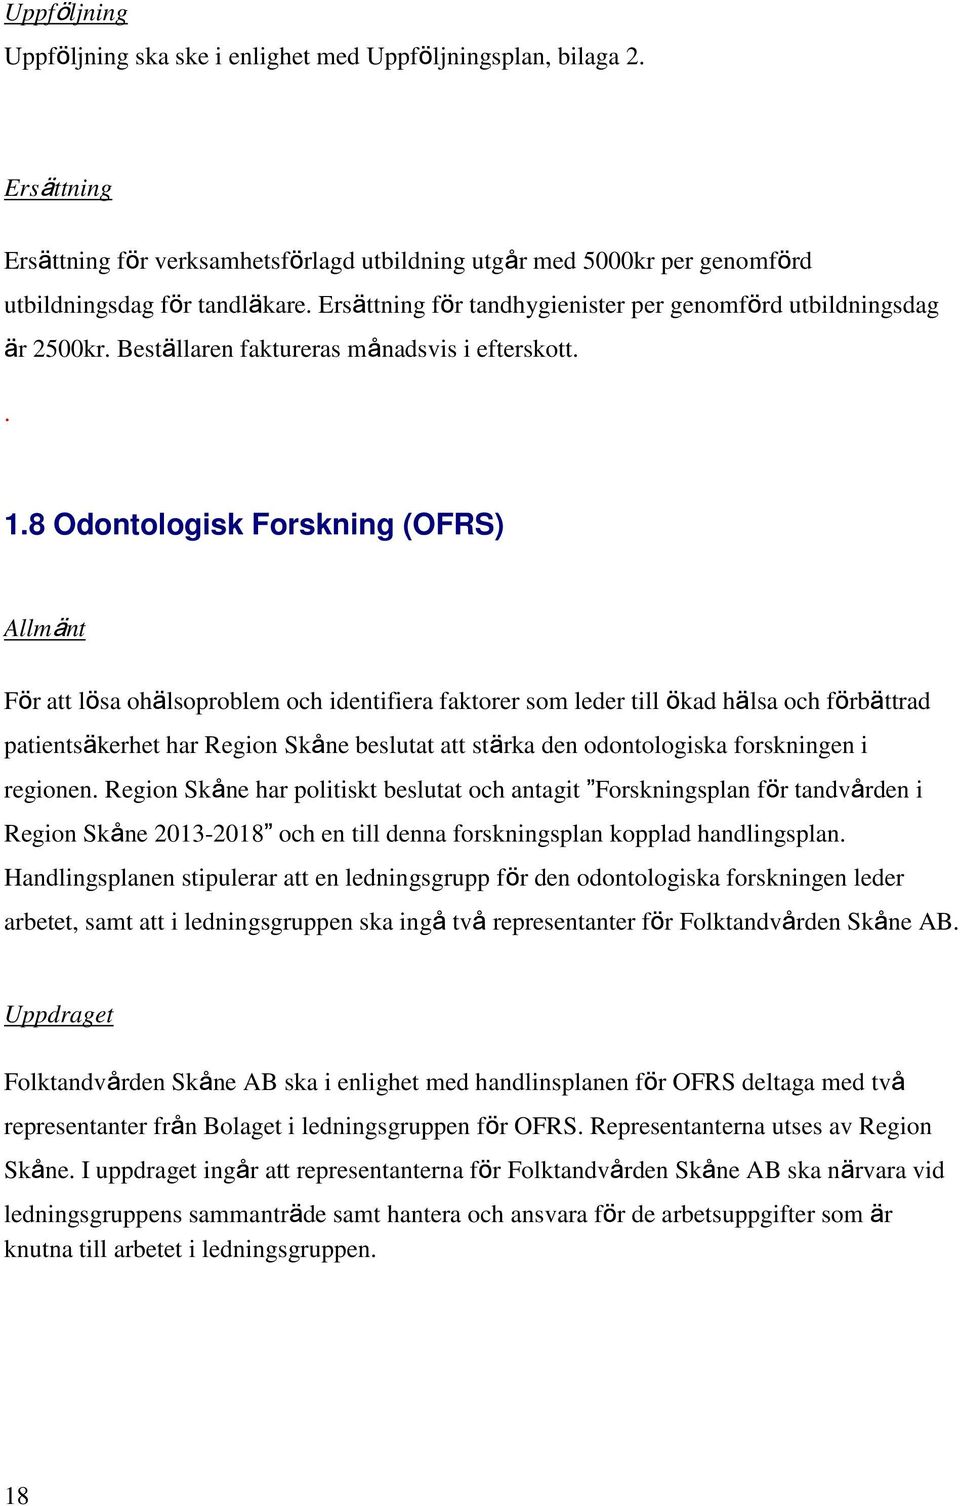 8 Odontologisk Forskning (OFRS) Allmänt För att lösa ohälsoproblem och identifiera faktorer som leder till ökad hälsa och förbättrad patientsäkerhet har Region Skåne beslutat att stärka den